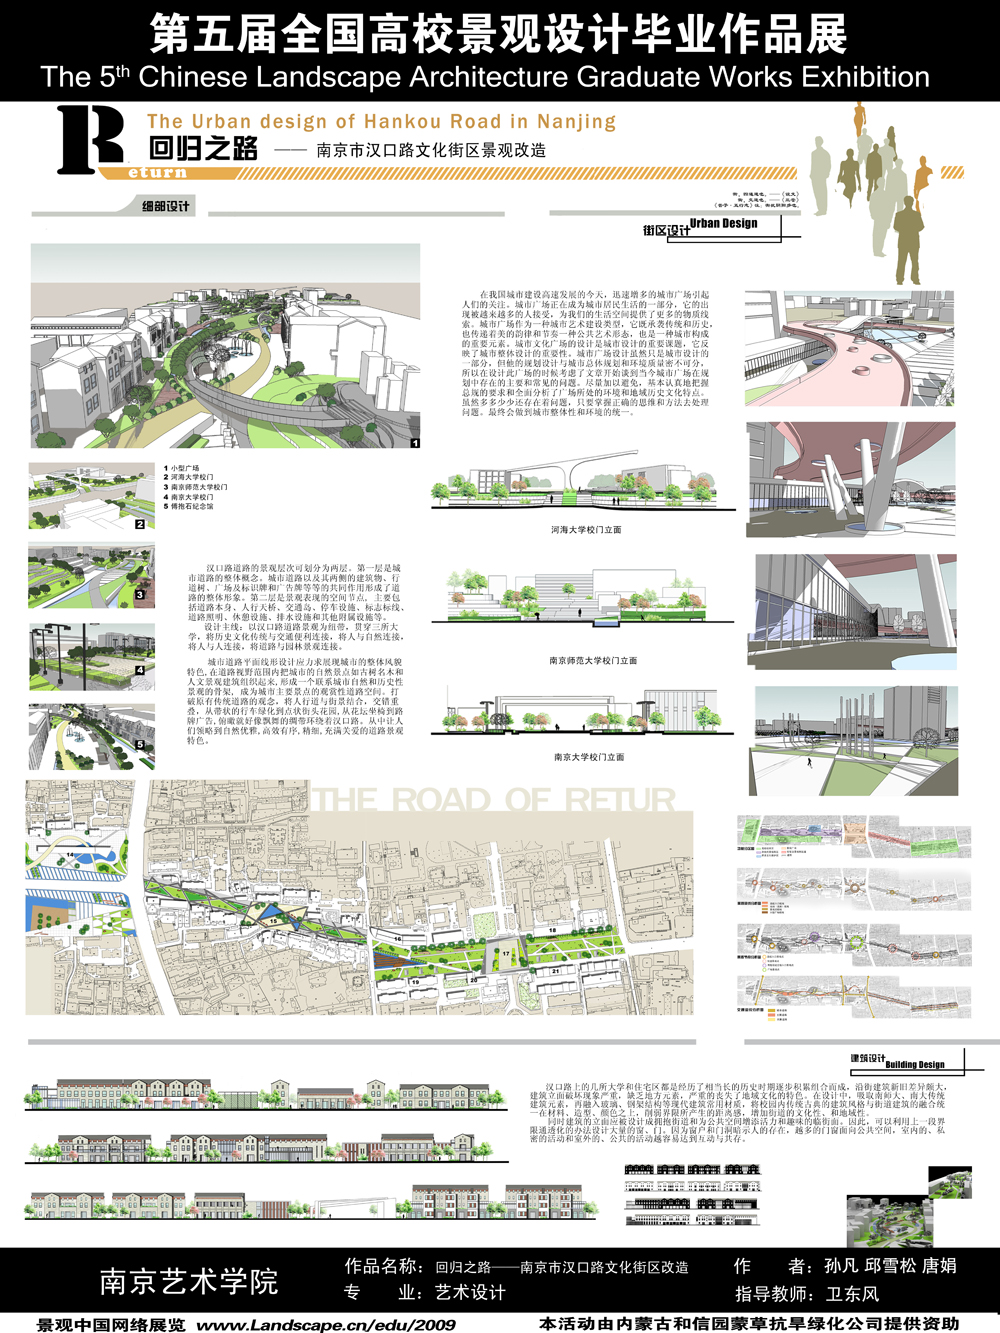 回归之路 —— 南京市汉口路文化街区改造-2